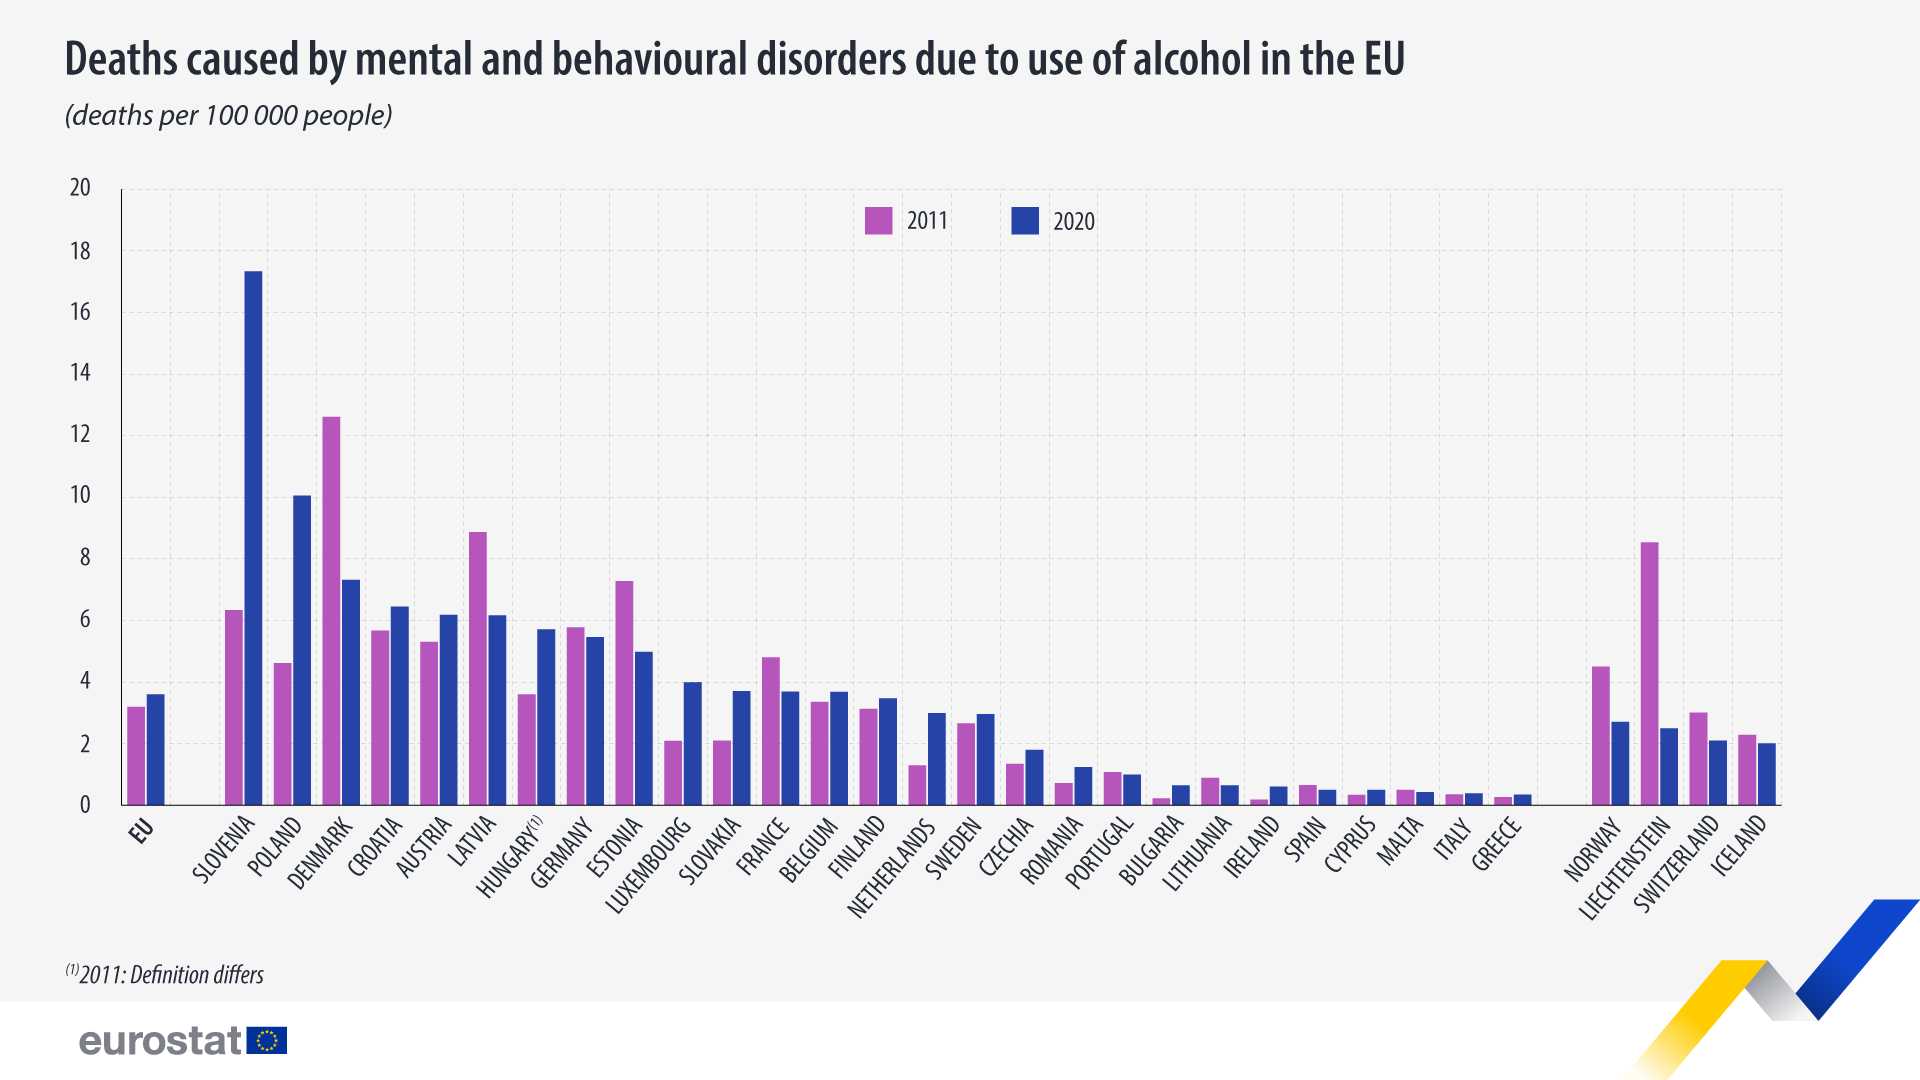 Gràfic de barres: Morts causades per trastorns mentals i del comportament per consum d'alcohol a la UE, taxa de morts